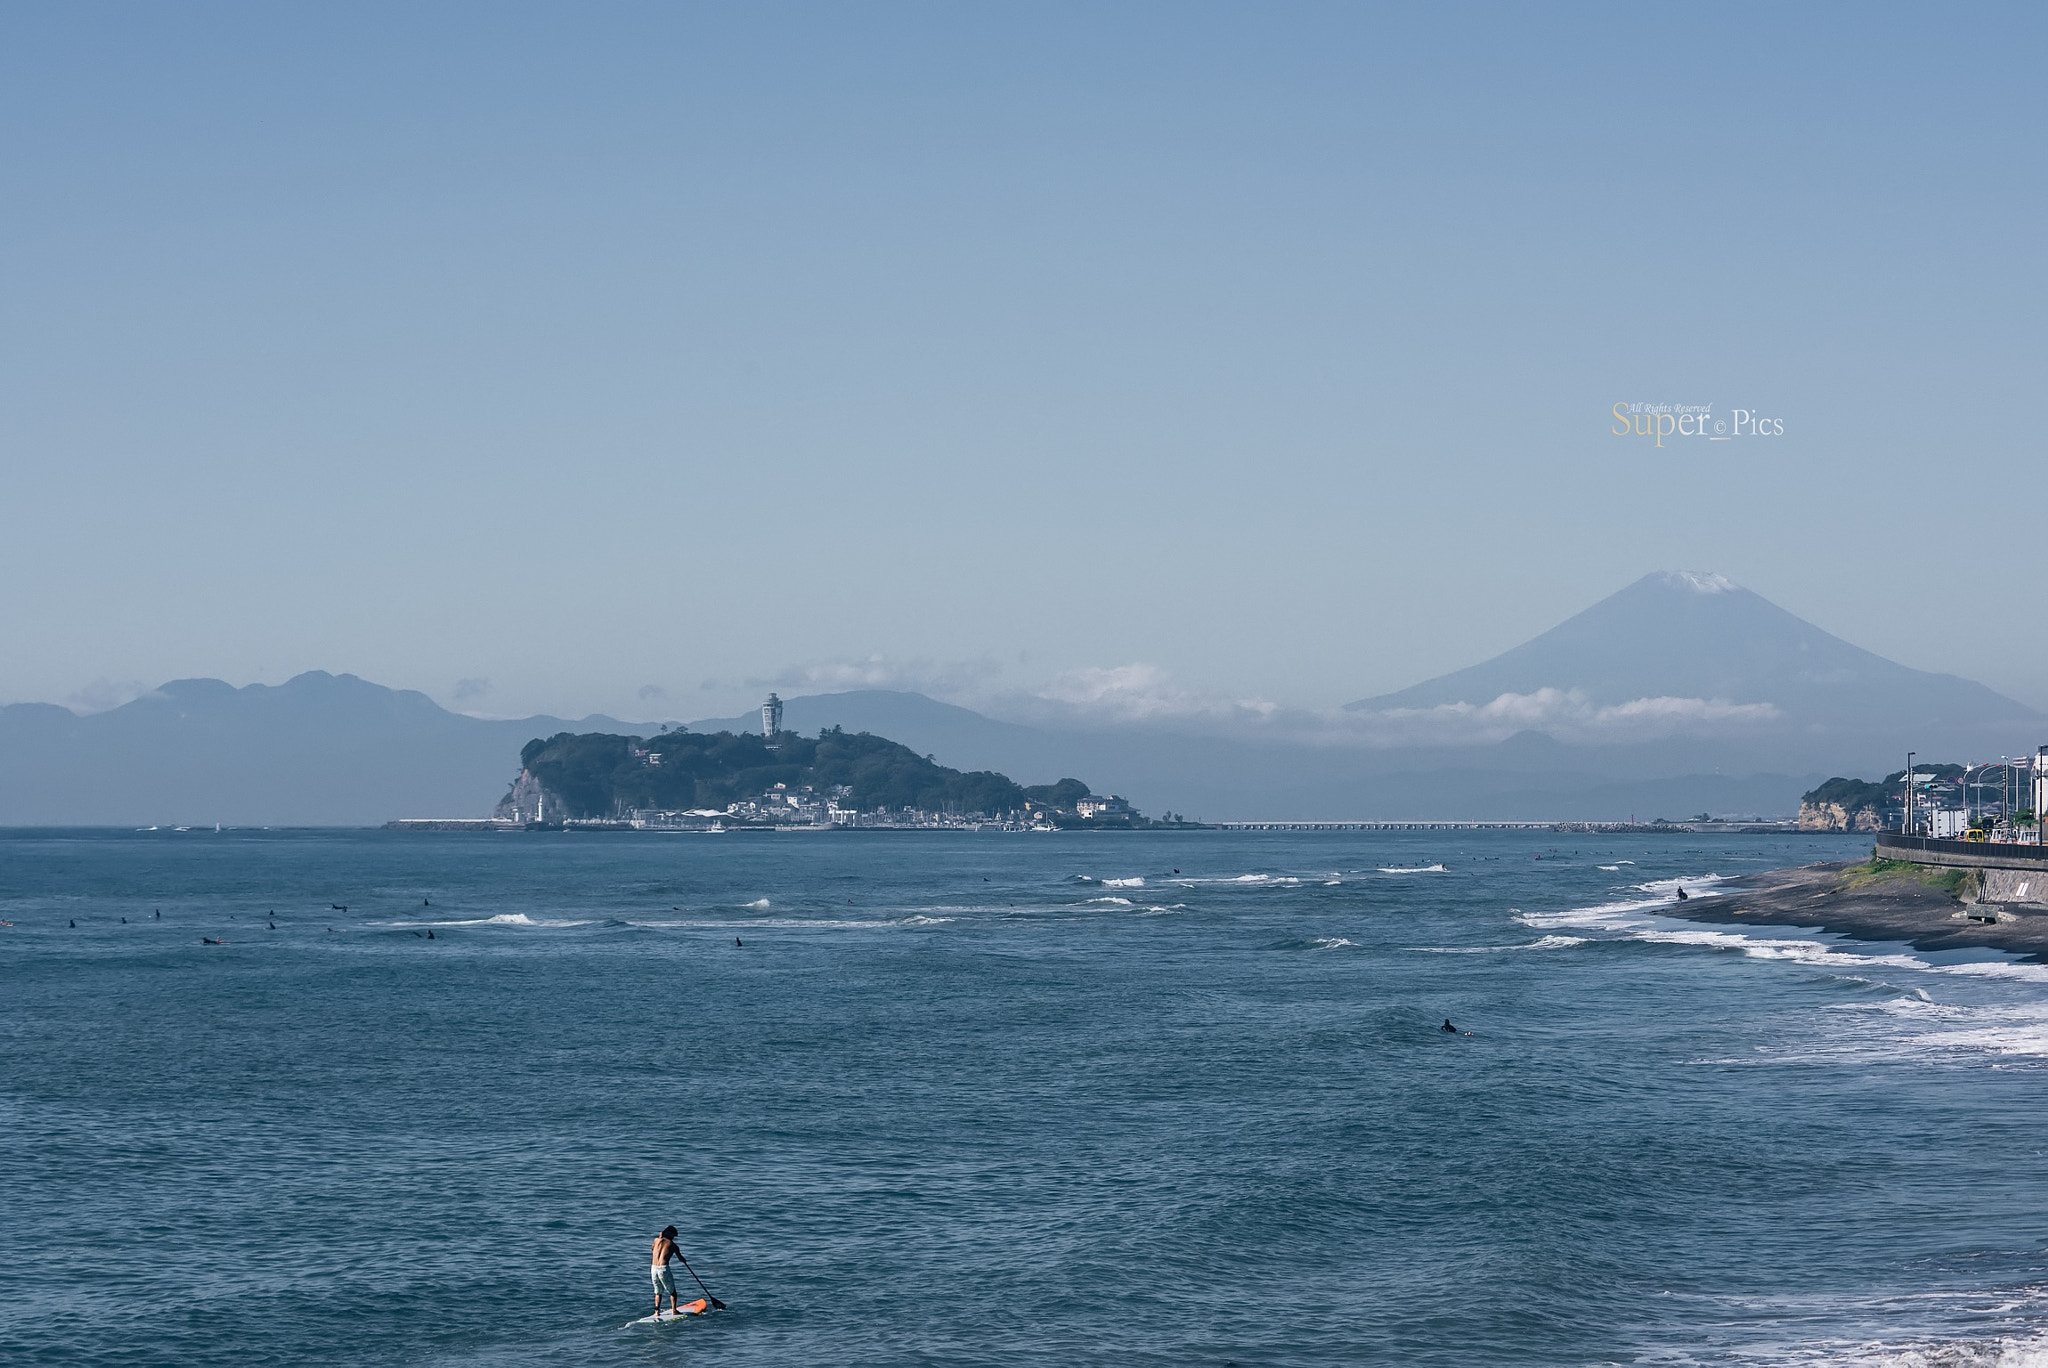 Nikon D810 + AF Zoom-Nikkor 70-210mm f/4 sample photo. Surfing in kamakura photography